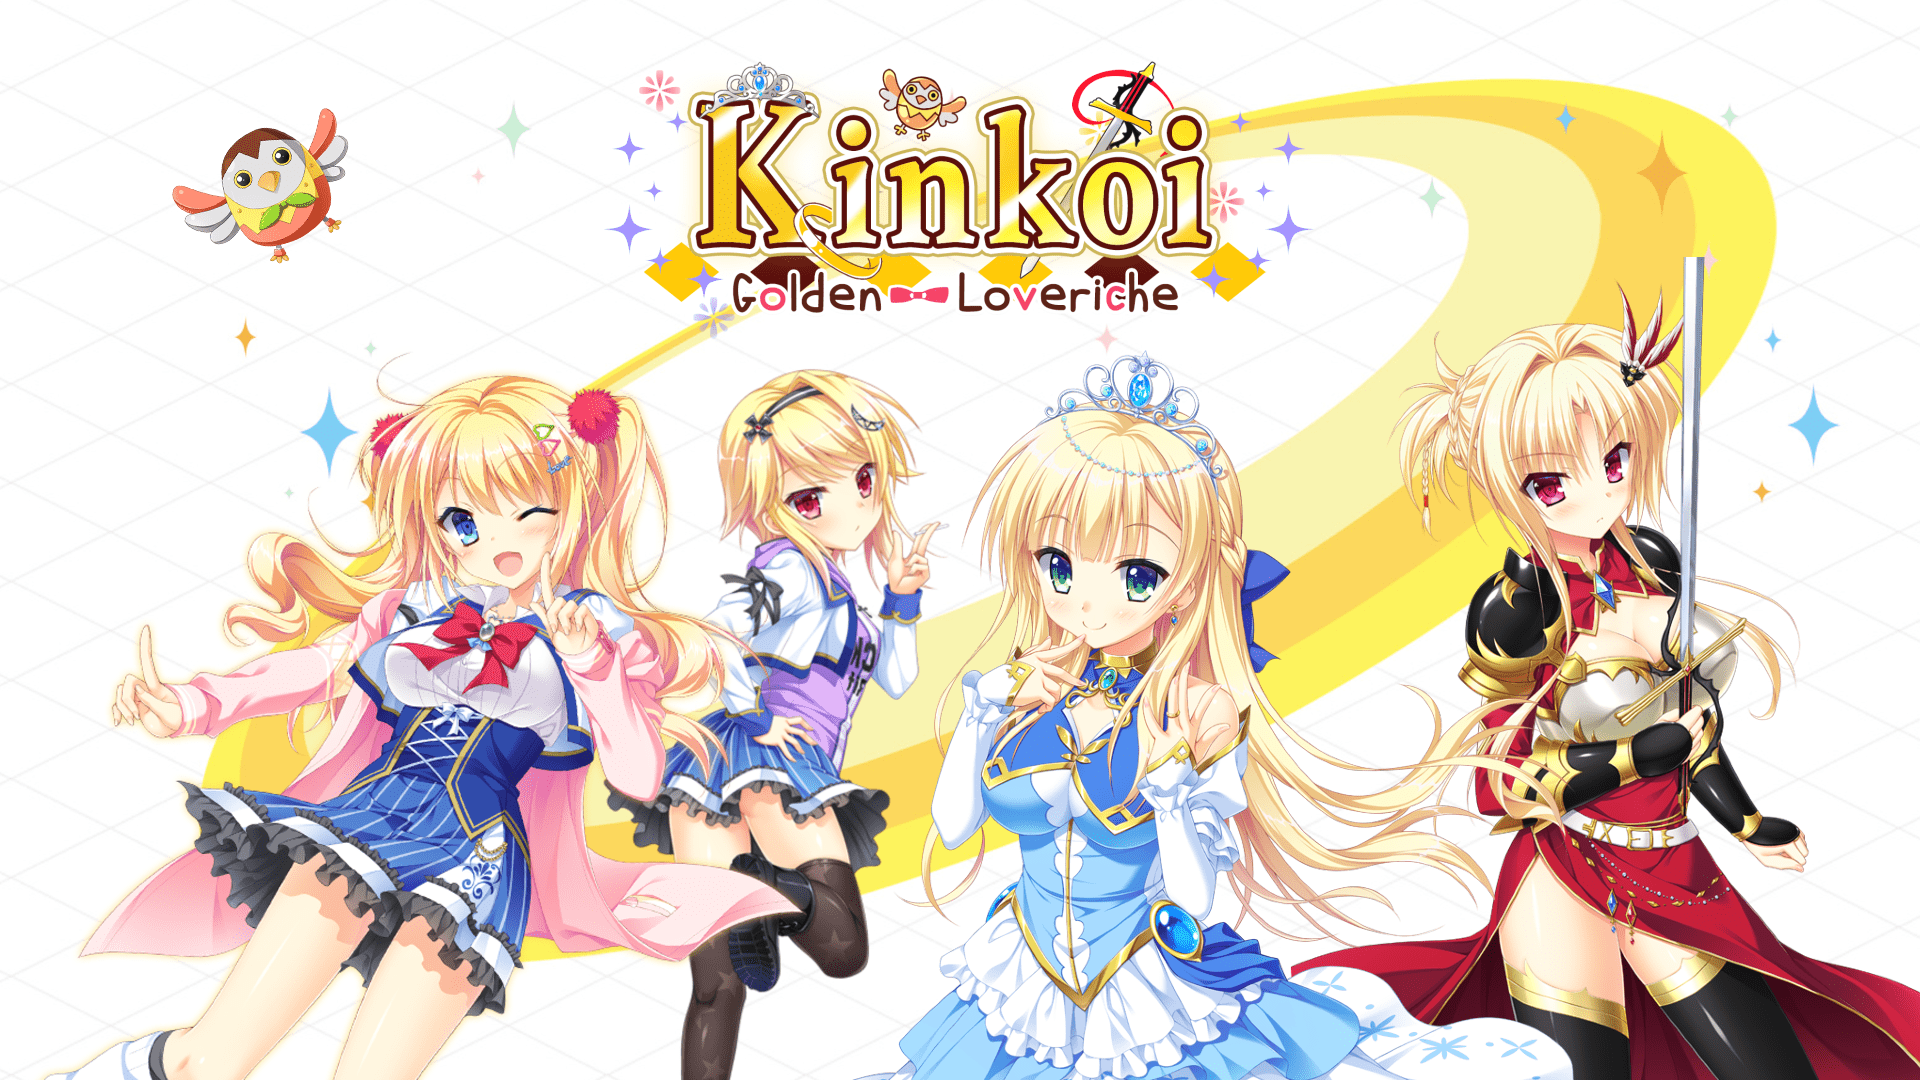 Kinkoi: Golden Loveriche - Featured